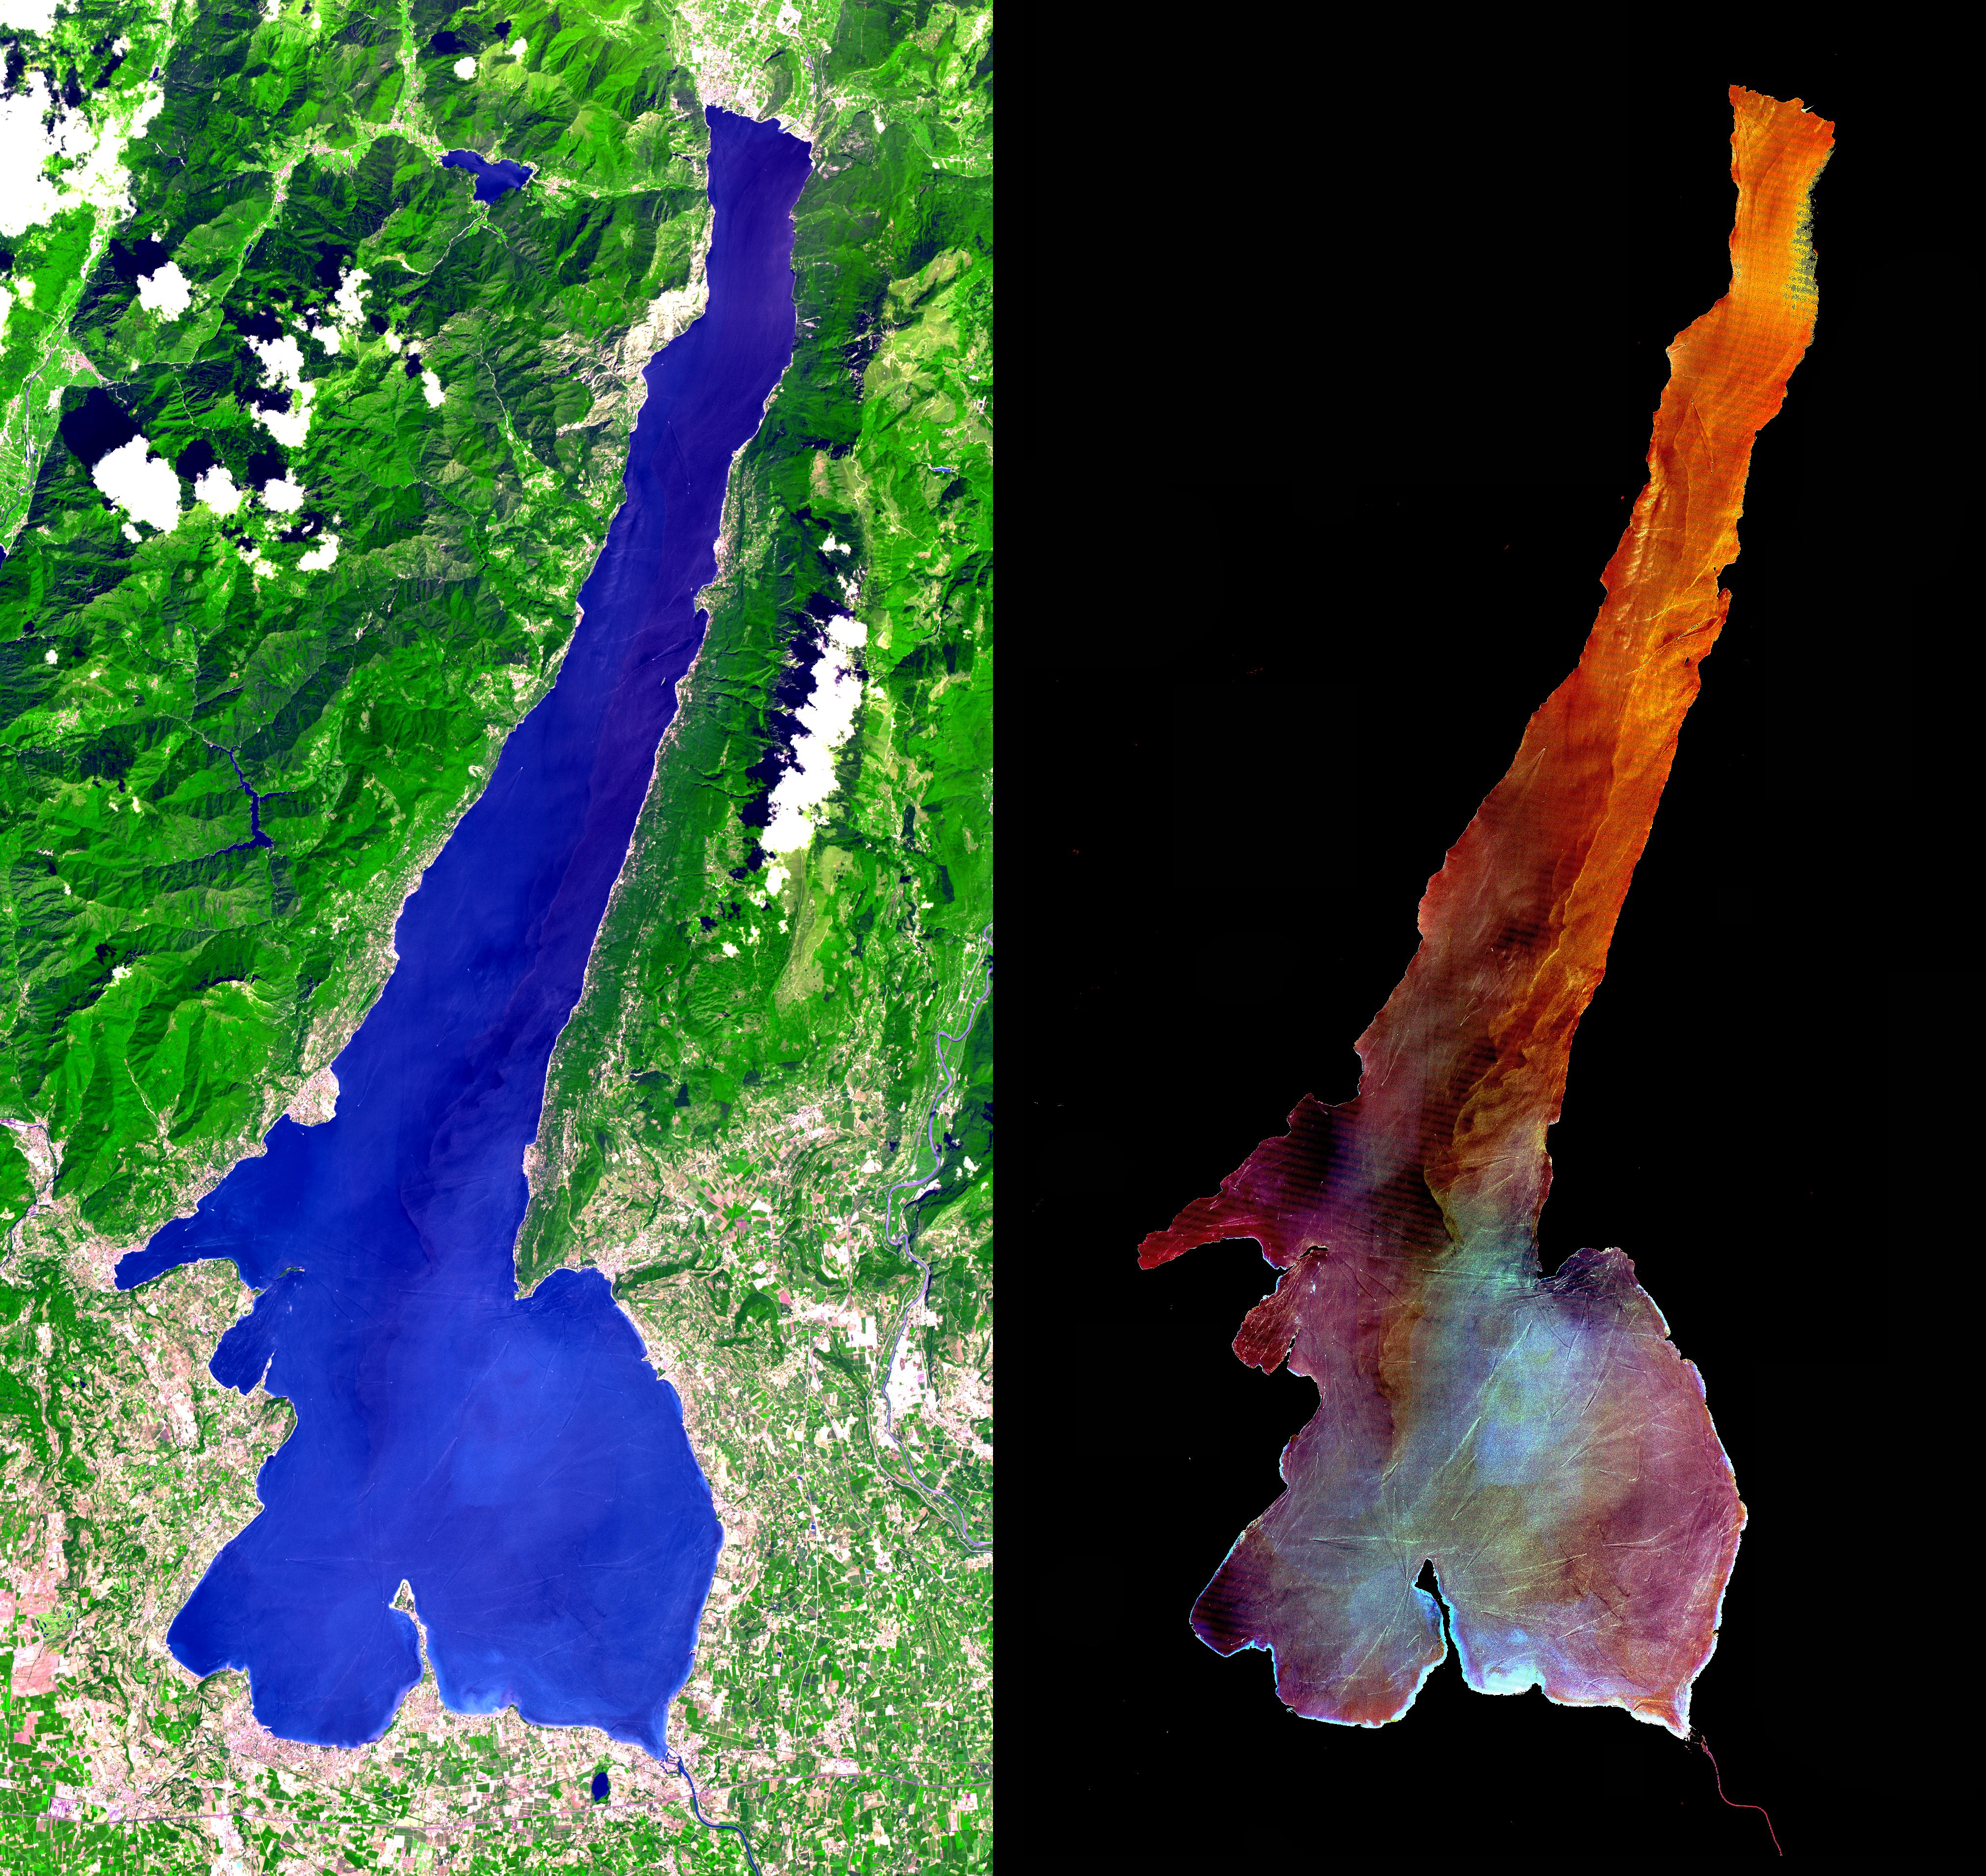 Il Lago di Garda visto dall'alto (NASA/GSFC/METI/ERSDAC/JAROS, and U.S./Japan ASTER Science Team)